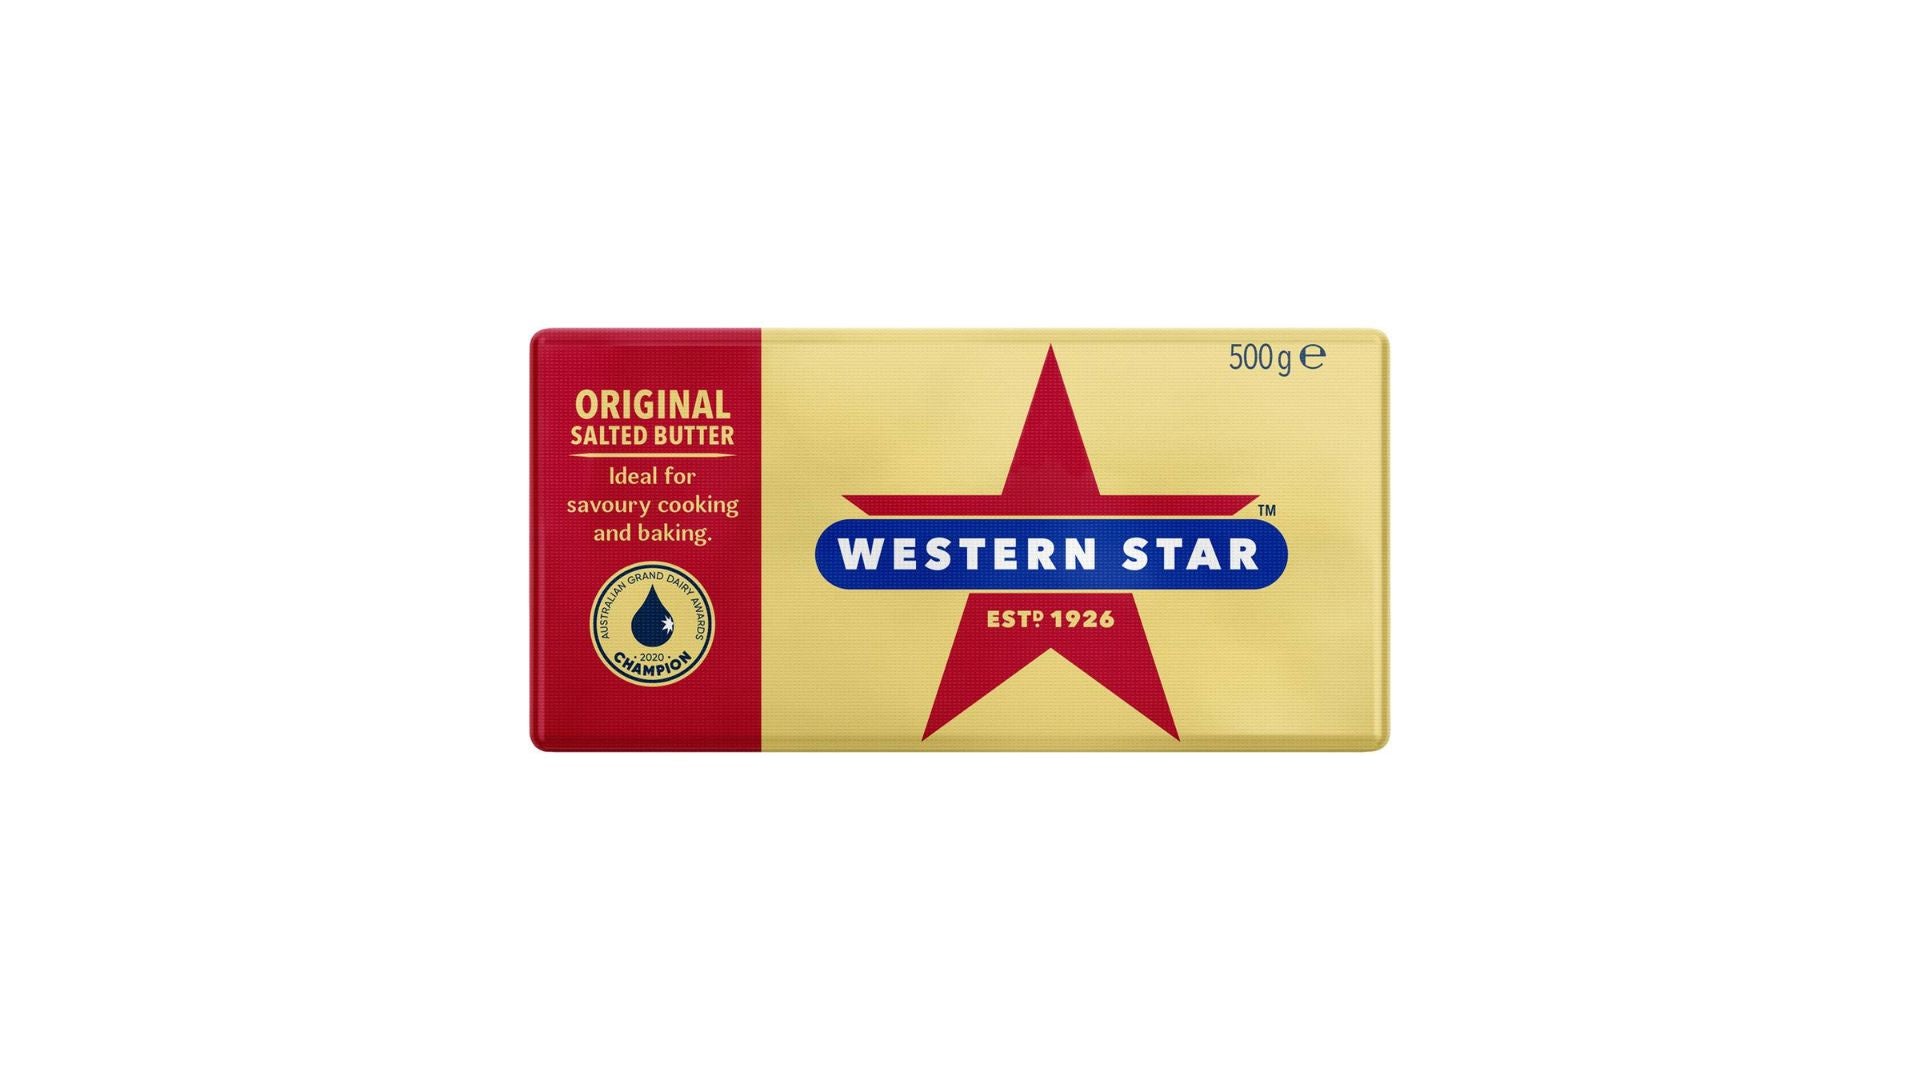 Western Star Original Salted Butter 250g